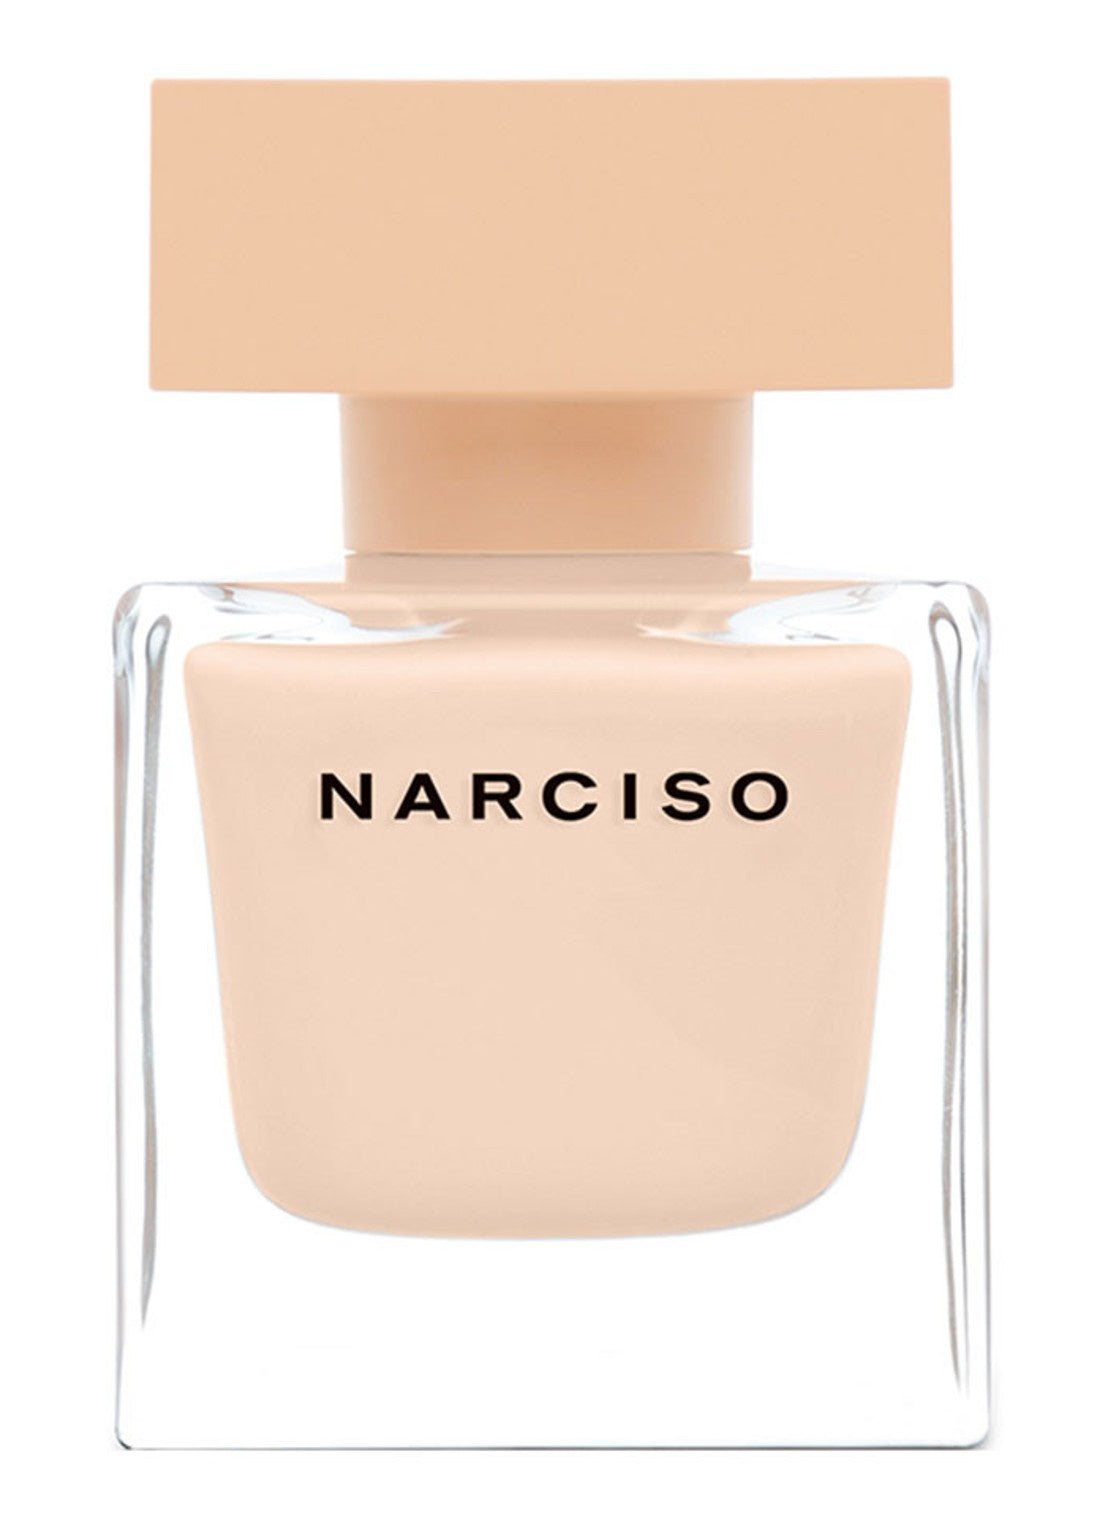 Narciso Poudrée Eau de Parfum